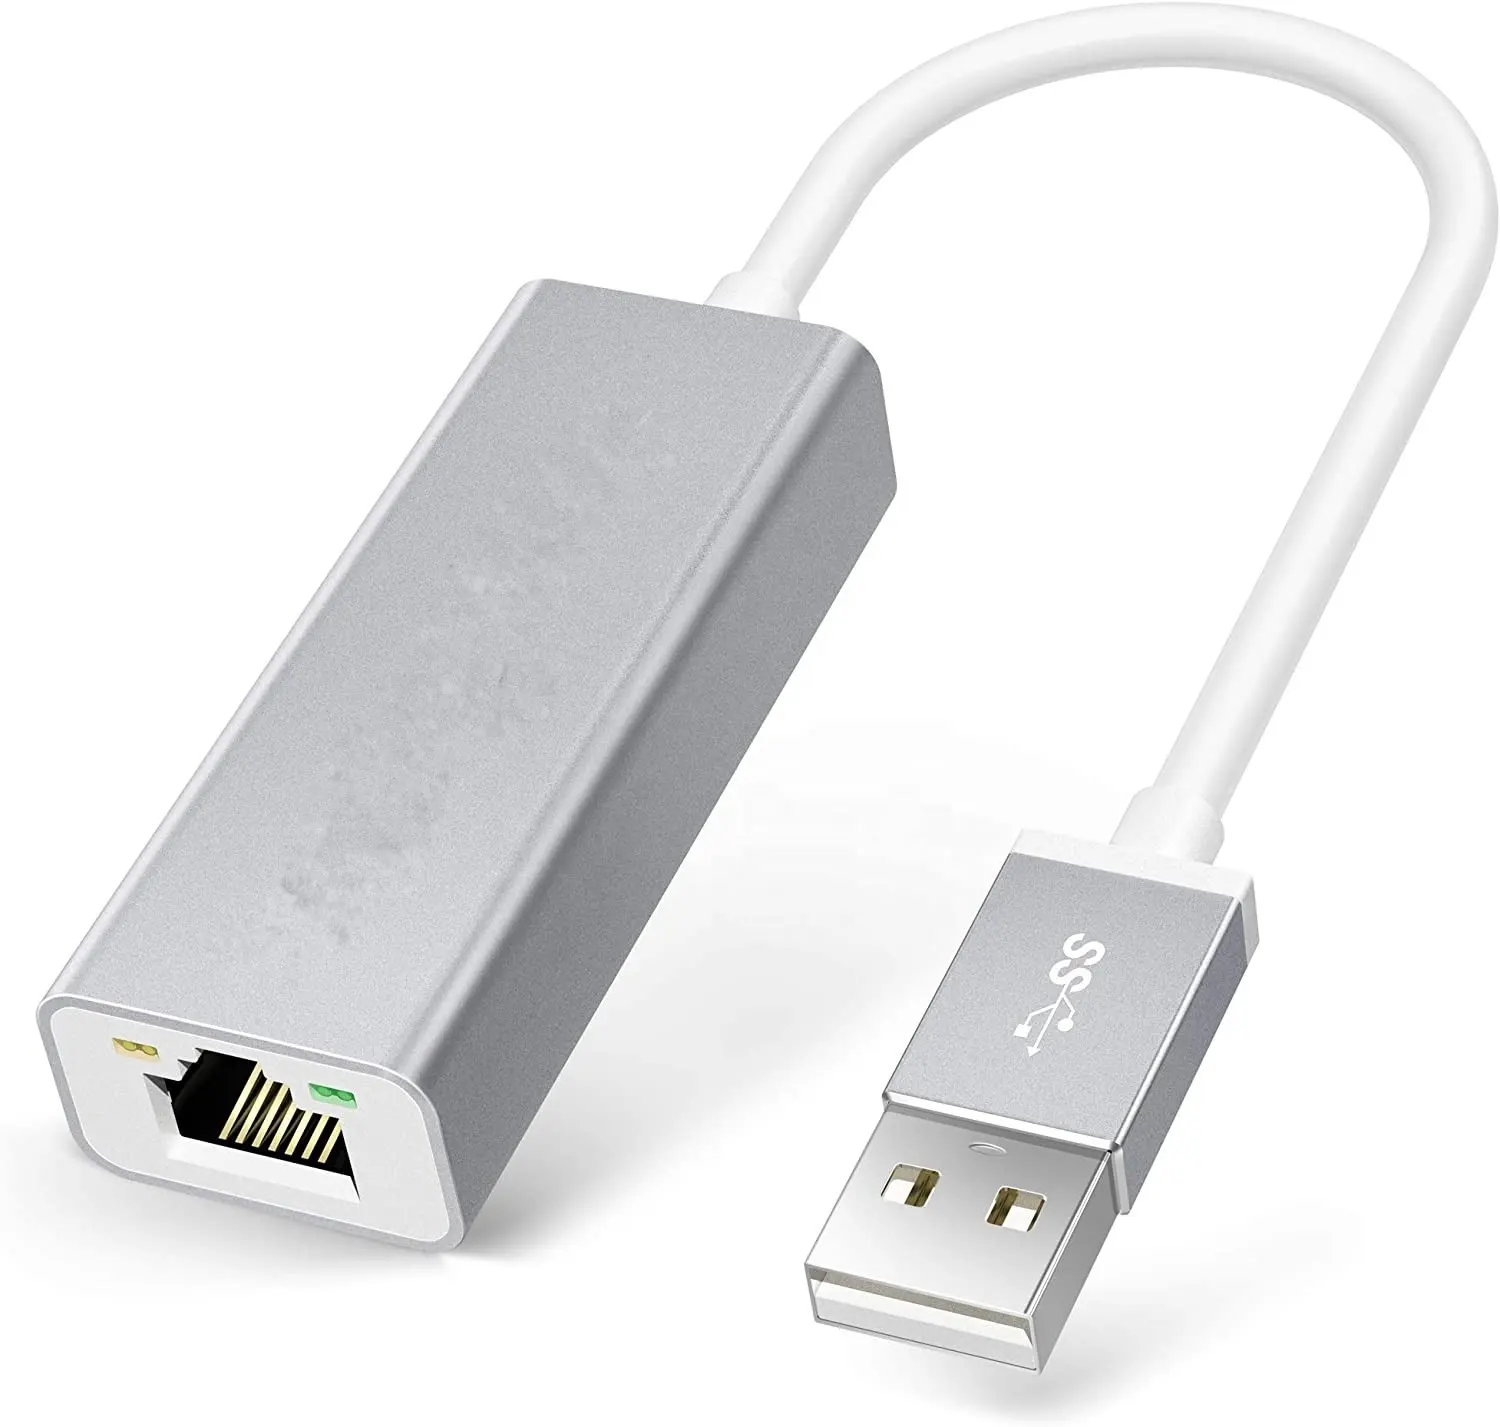 USB 이더넷 어댑터 닌텐도 스위치 Wii U 인터넷 연결 Mac 노트북 USB LAN 어댑터